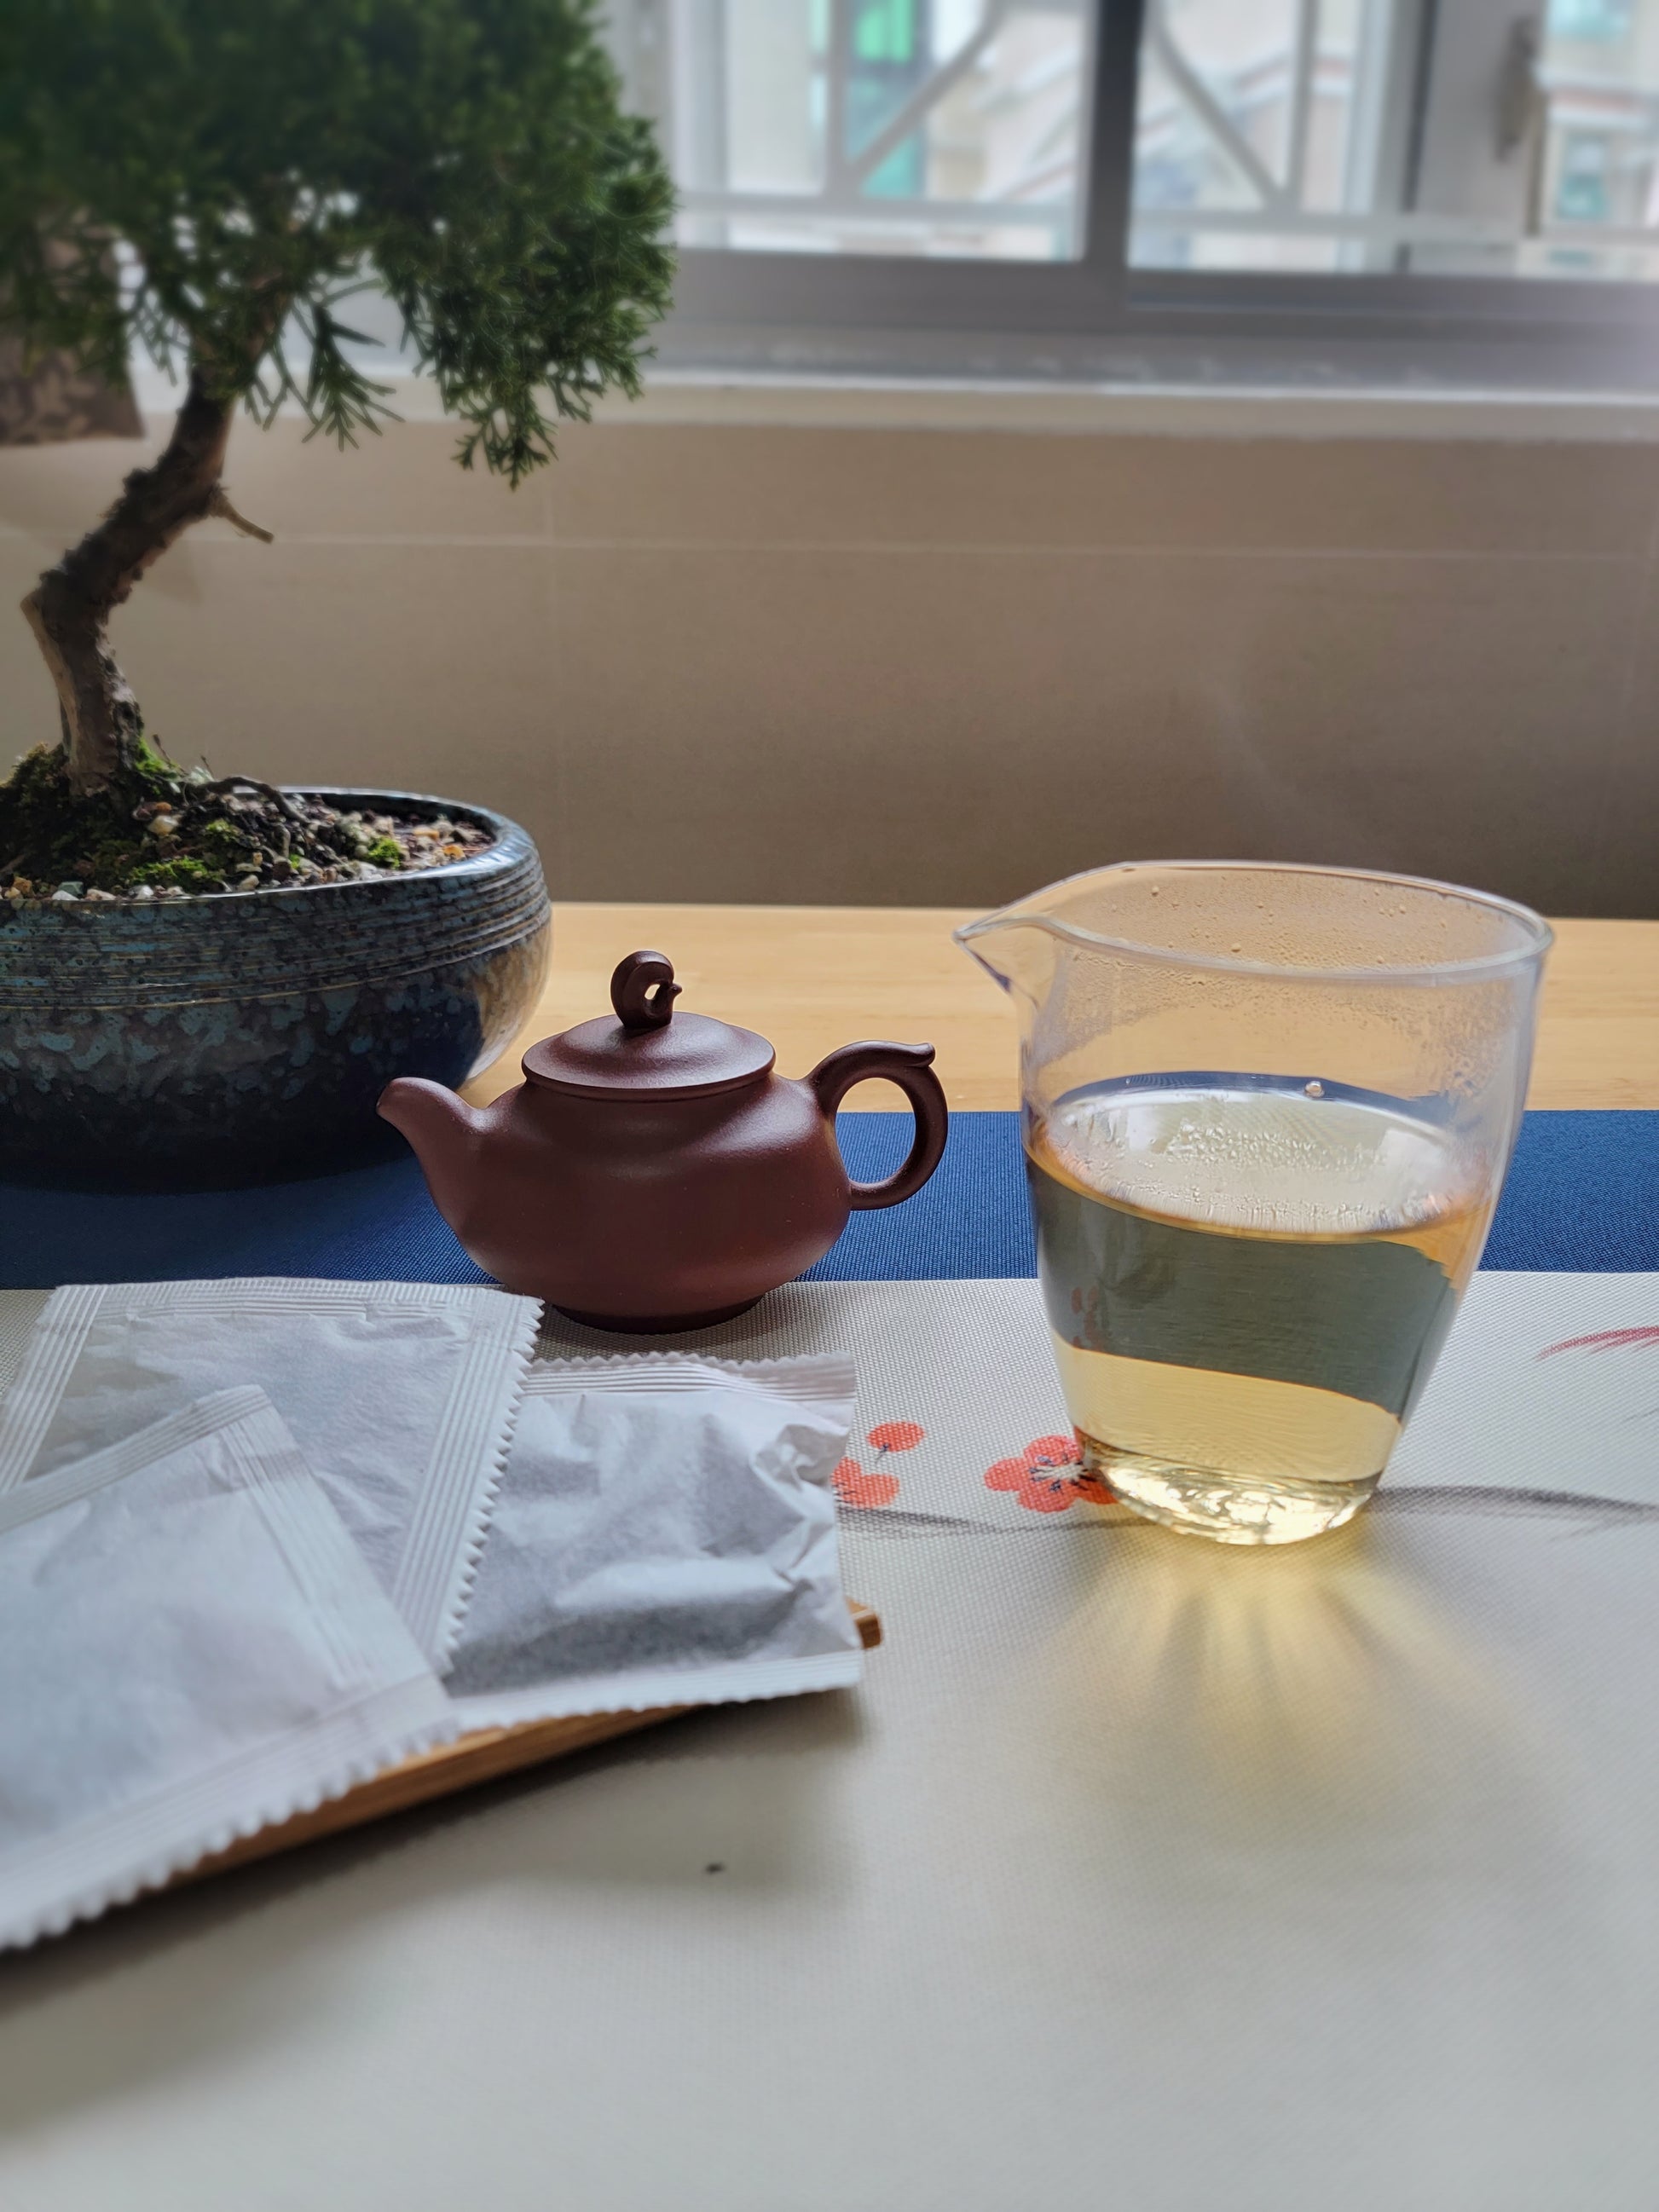 Aroma Tea Shop